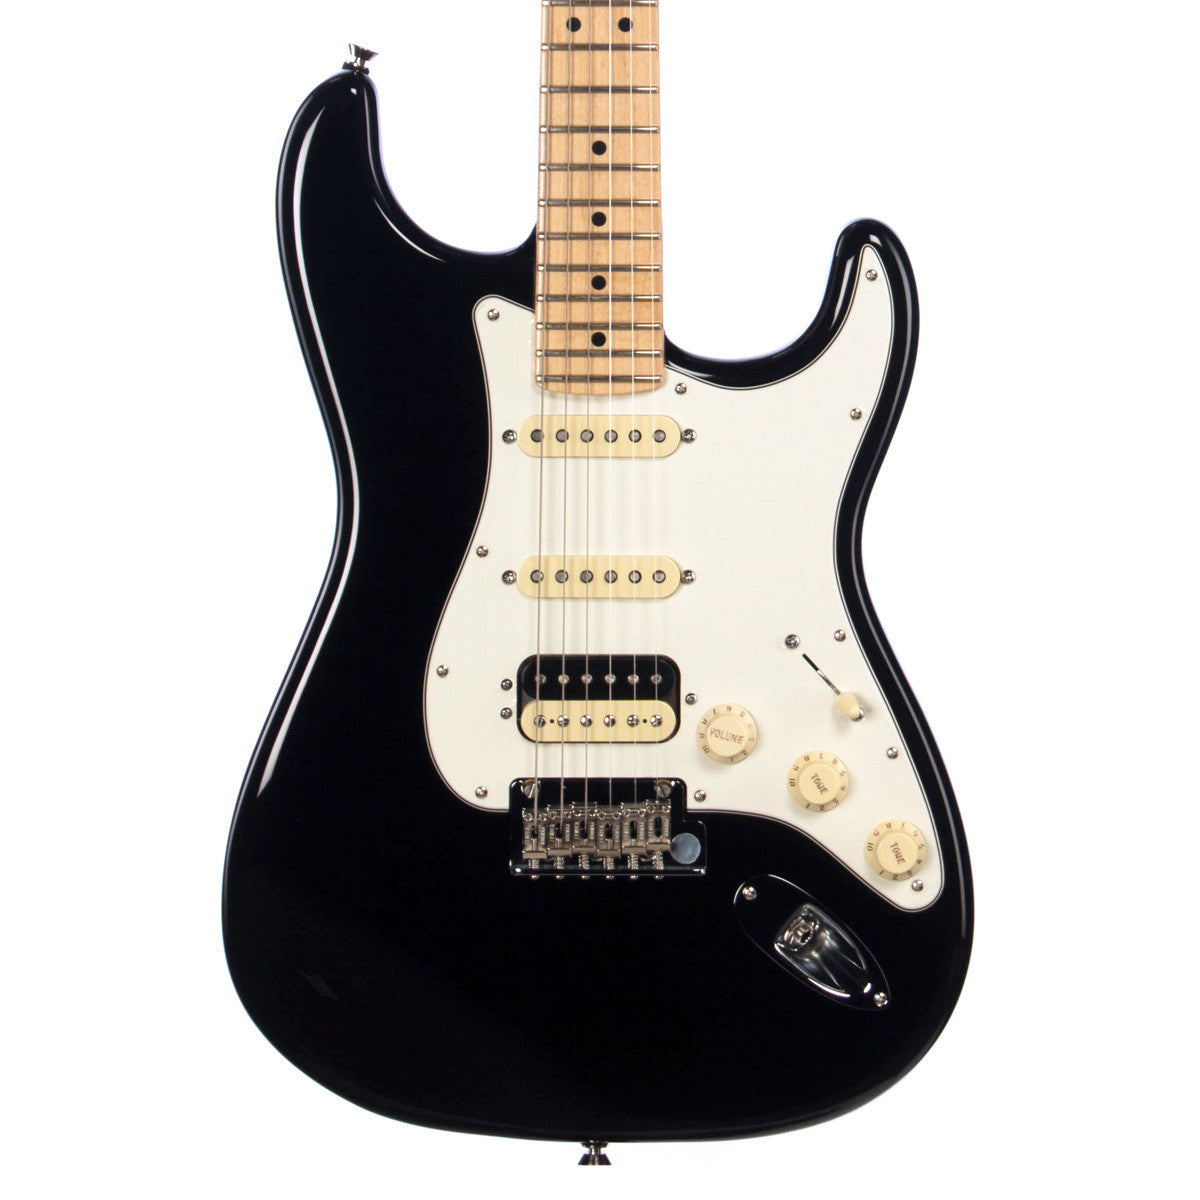 Kenya Outlook Heel Fender American Standard Stratocaster HSS Shawbucker - Black | Make'n Music